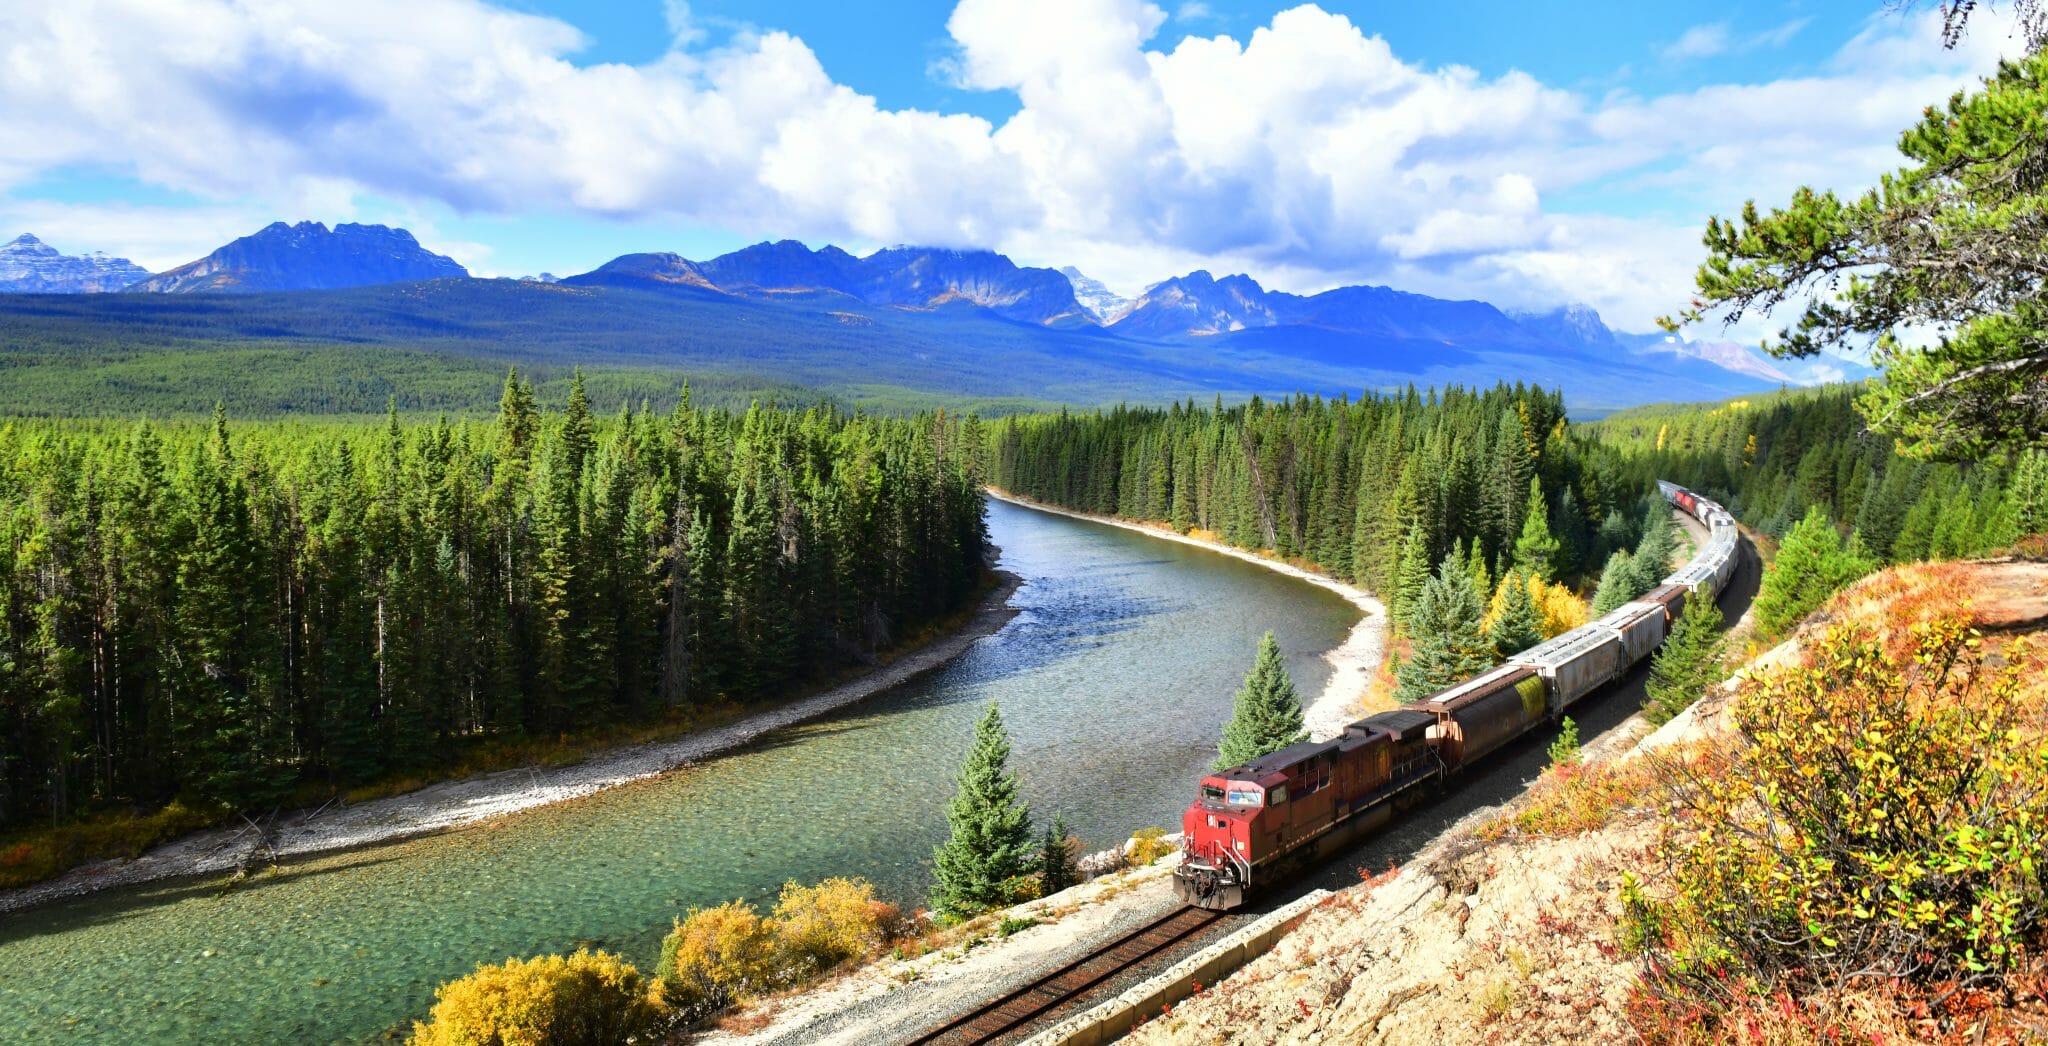 Kanada Rundreise buchen Erfurt bei REISEBÜRO Wache; im Bild: Zug fährt parallel zu einem Fluss im Banff-Nationalpark in Kanada, grüne Bäume, im Hintergrund die Silhouette der Berge